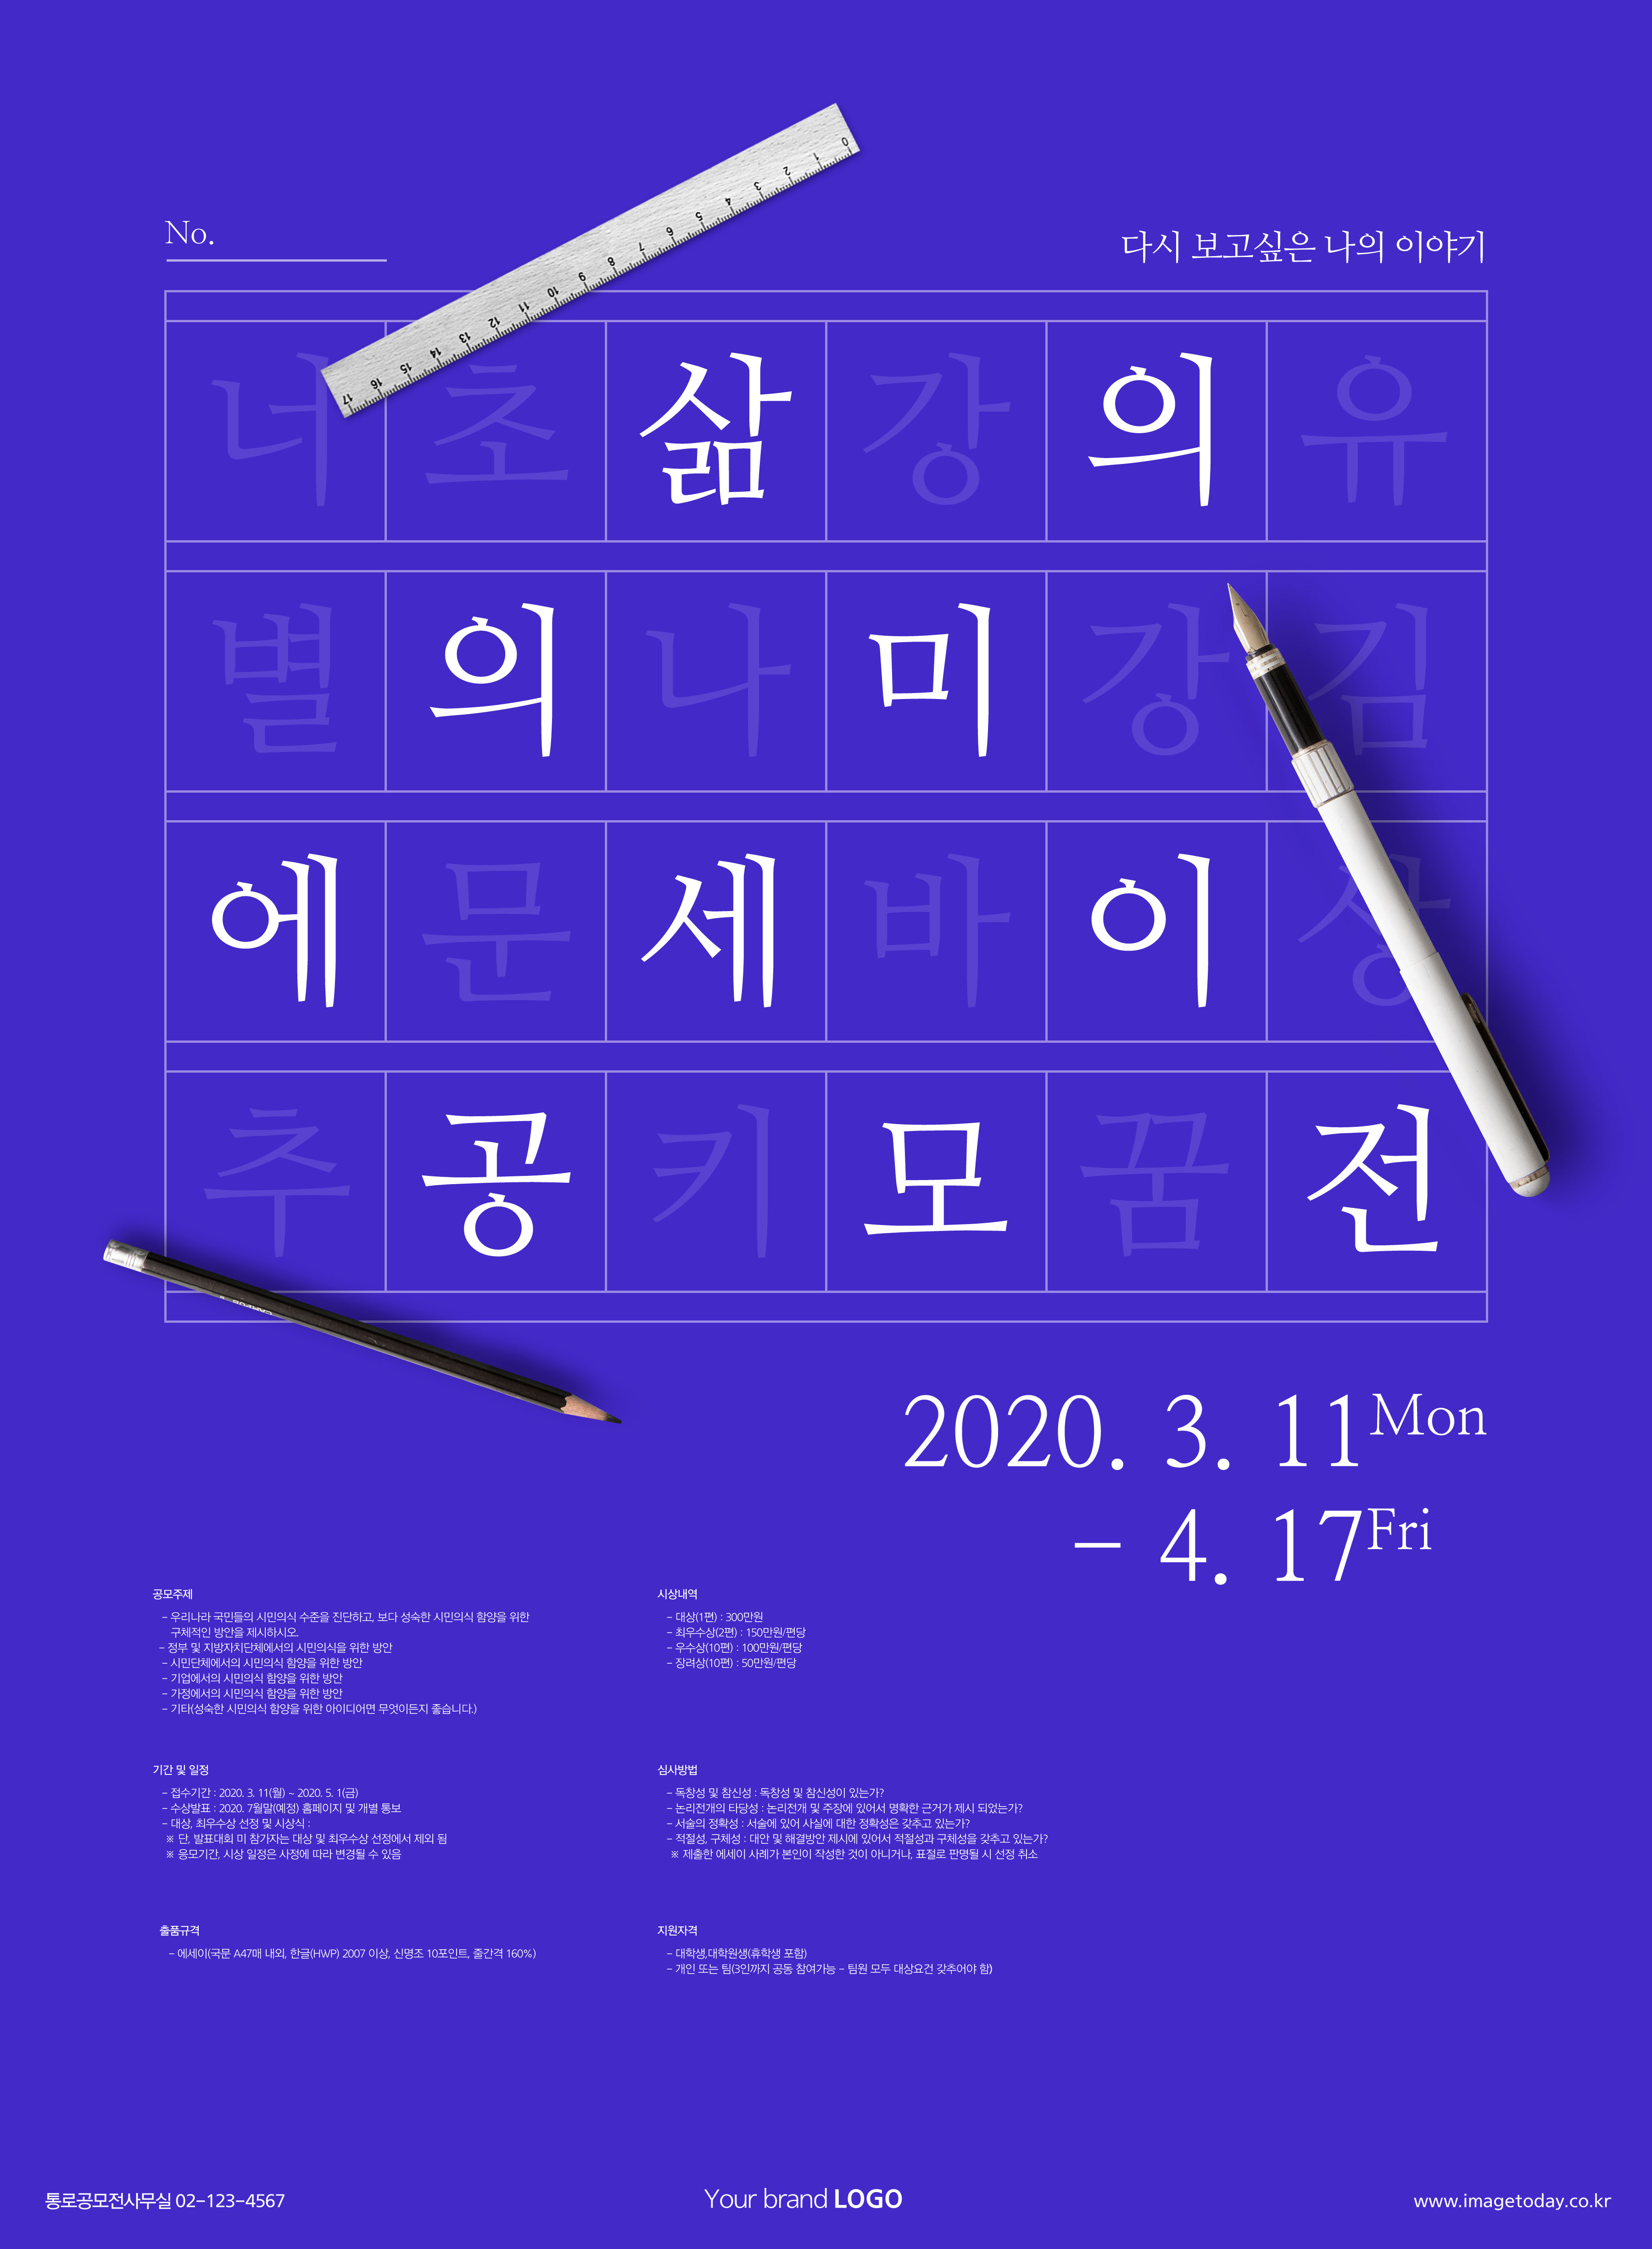 学习测试主题海报PSD素材素材中国精选韩国psd素材插图